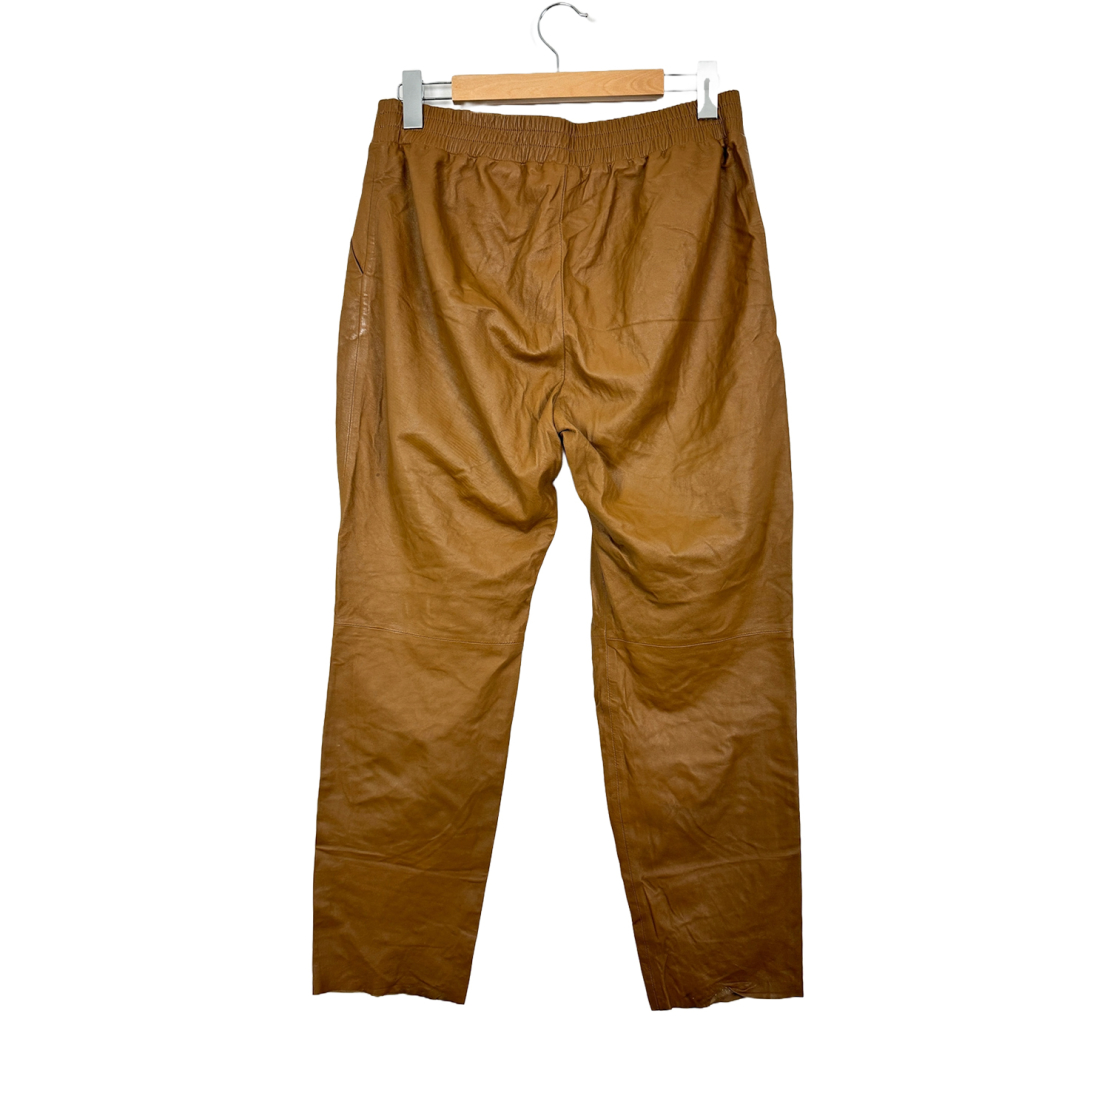 Дамски кожен панталон H&M Studio Fall 2014 Leather Pants